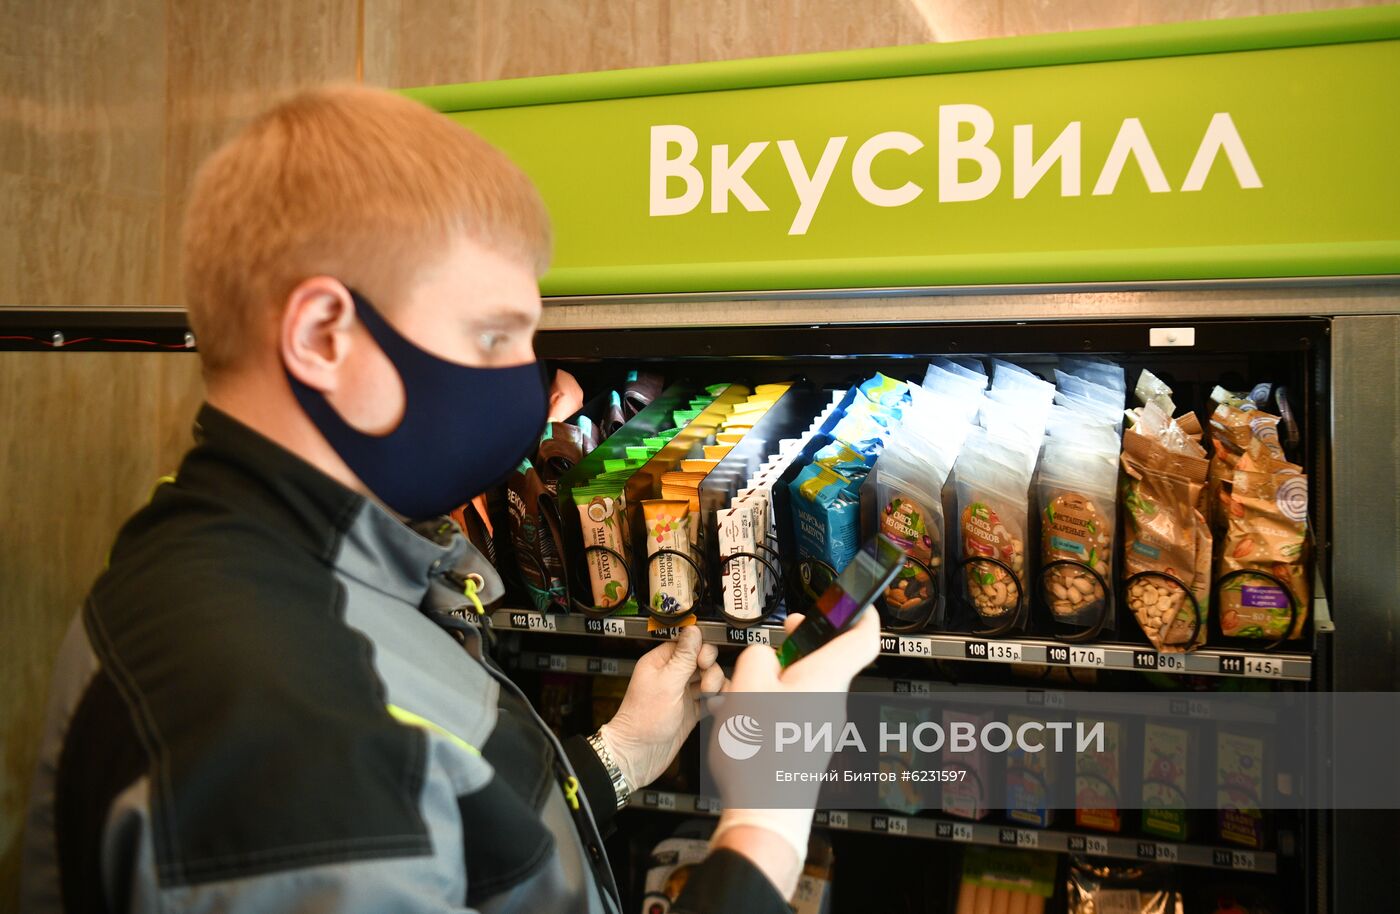 "ВкусВилл" установил вендинговые автоматы в жилом комплексе в Москве